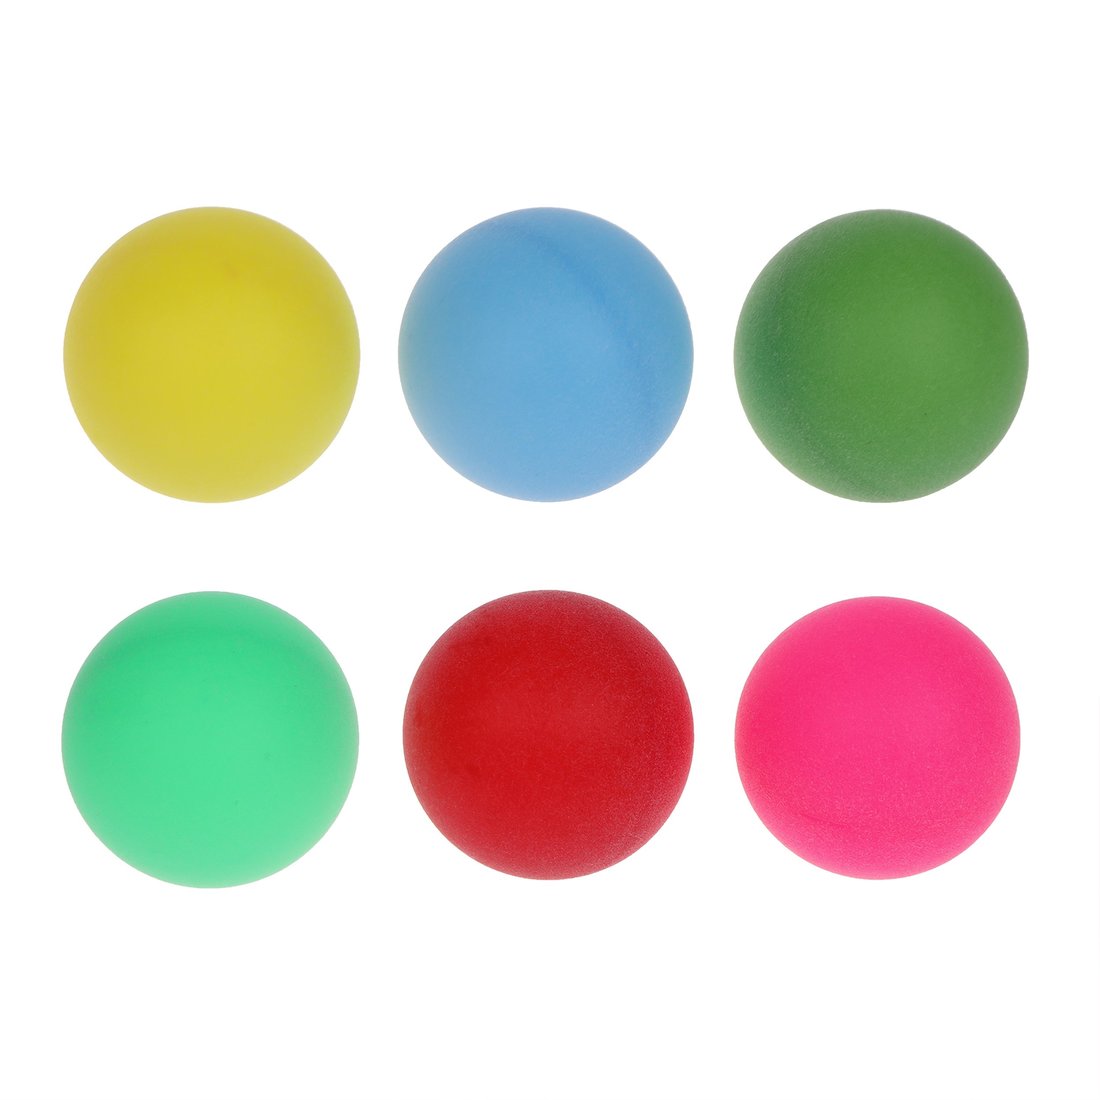 Шарики для настольного тенниса 636179 цветные в наборе 6шт в пакете - Набережные Челны 